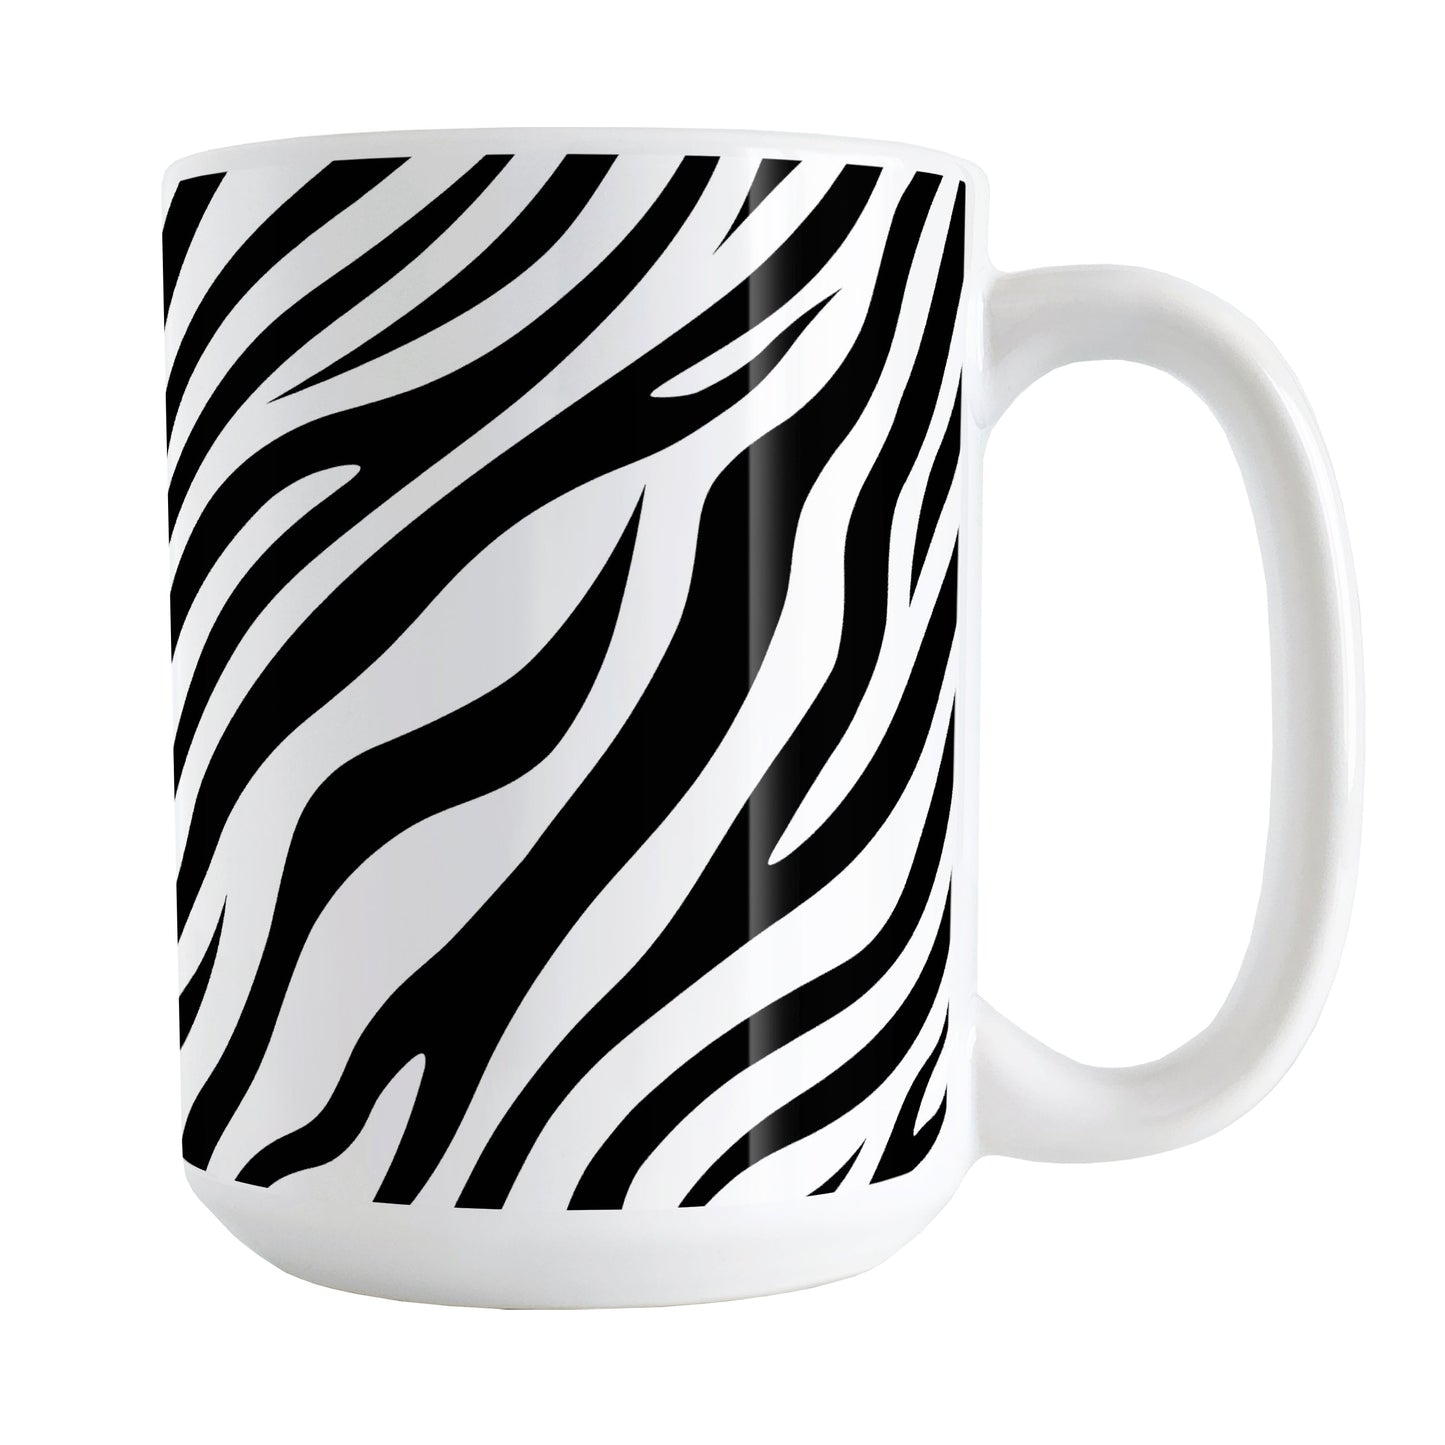 Zebra Print Pattern Mug (15oz) at Amy's Coffee Mugs